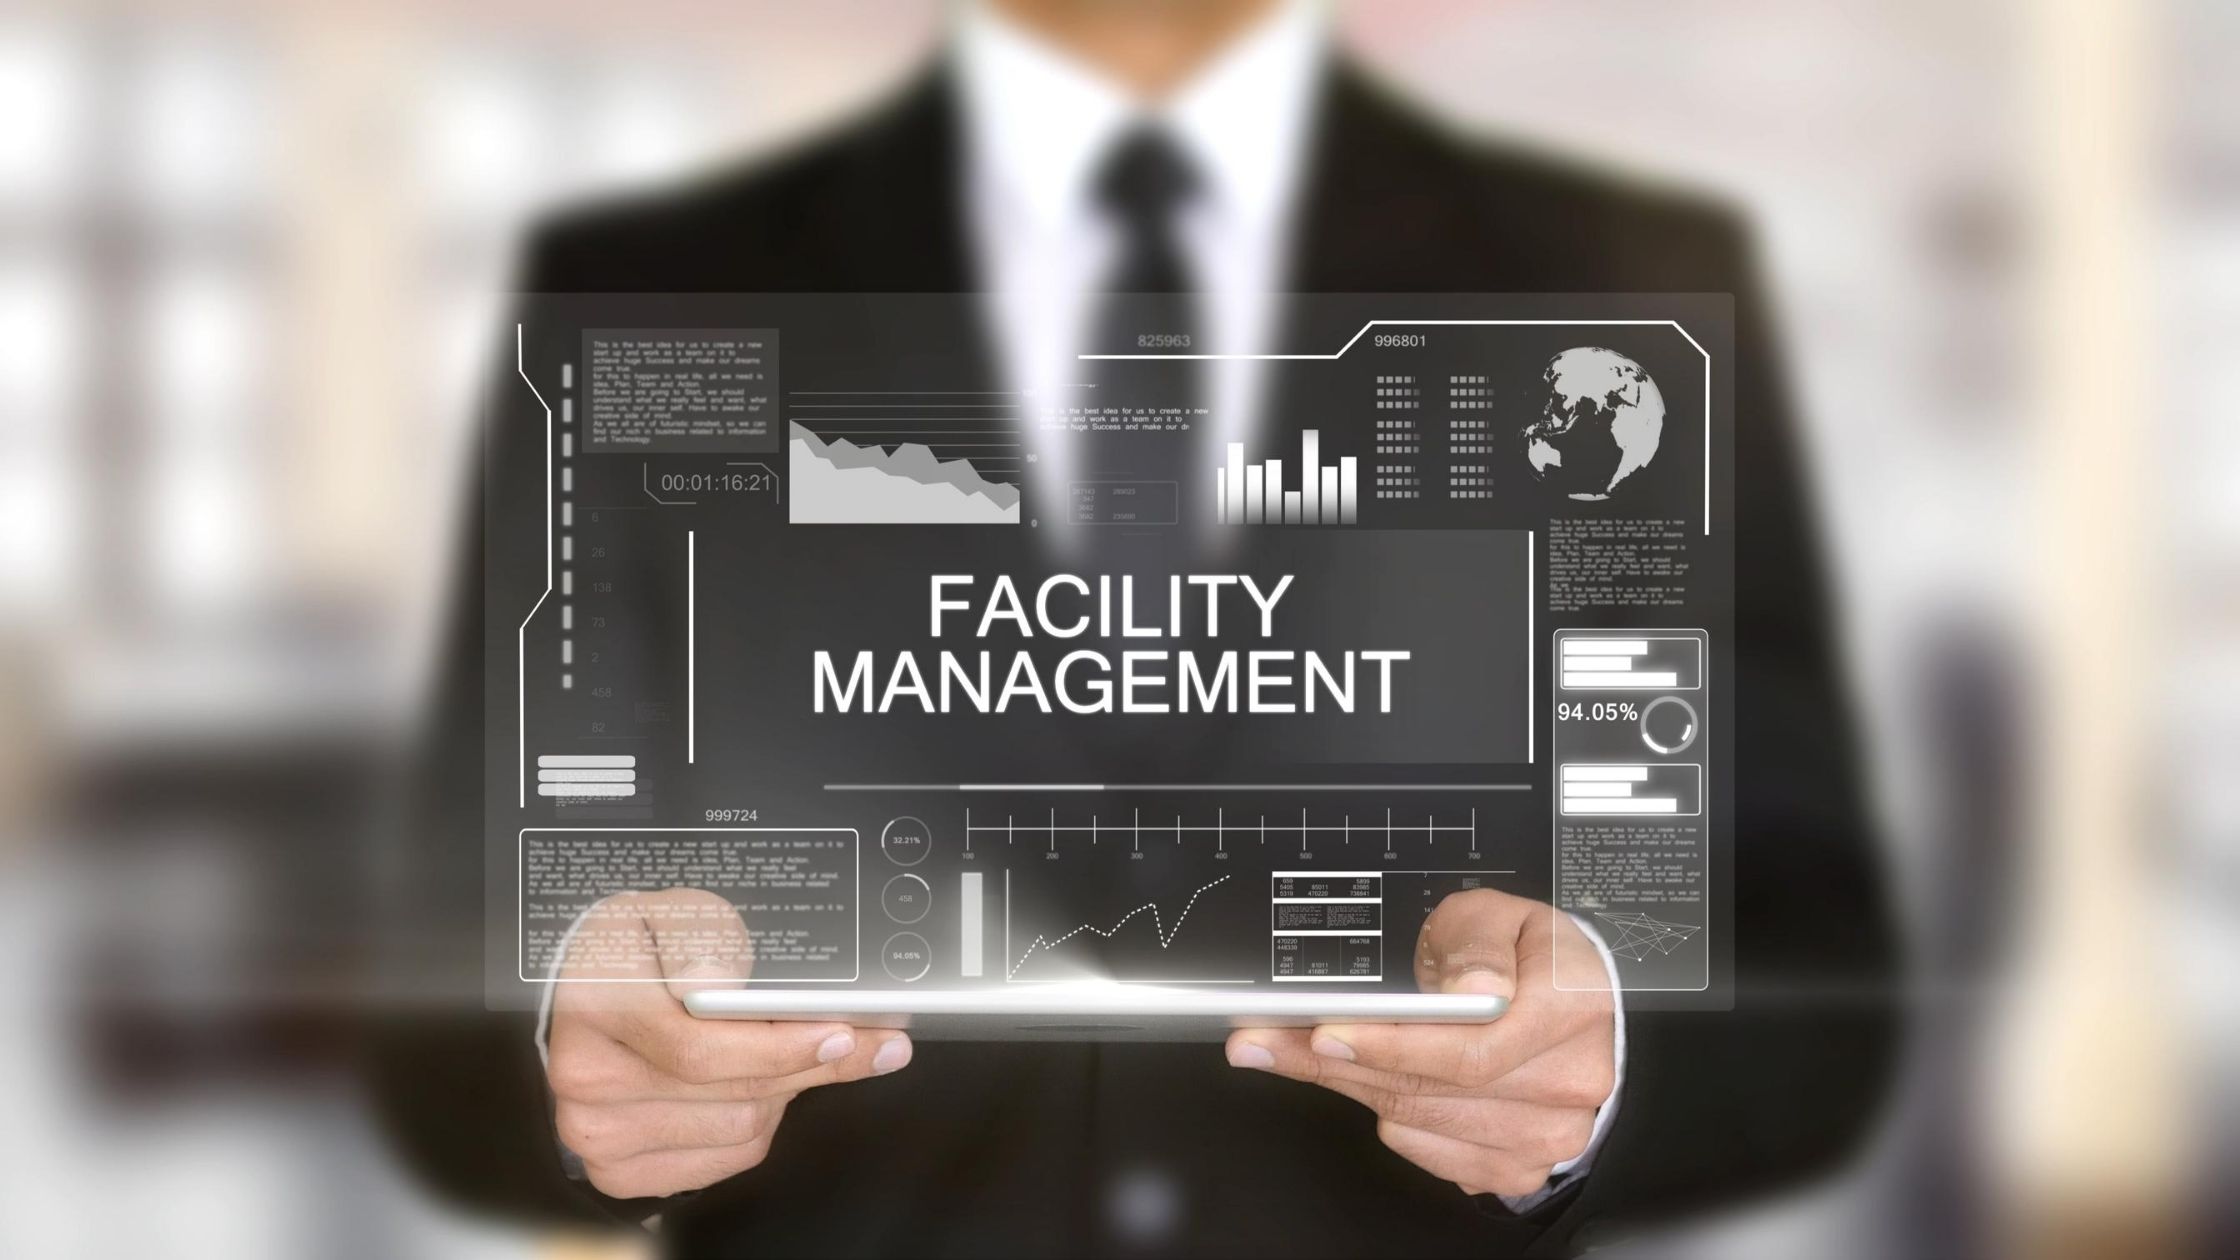 ¿Qué es el "Facility Management" en la administración? - EdiPro Blog